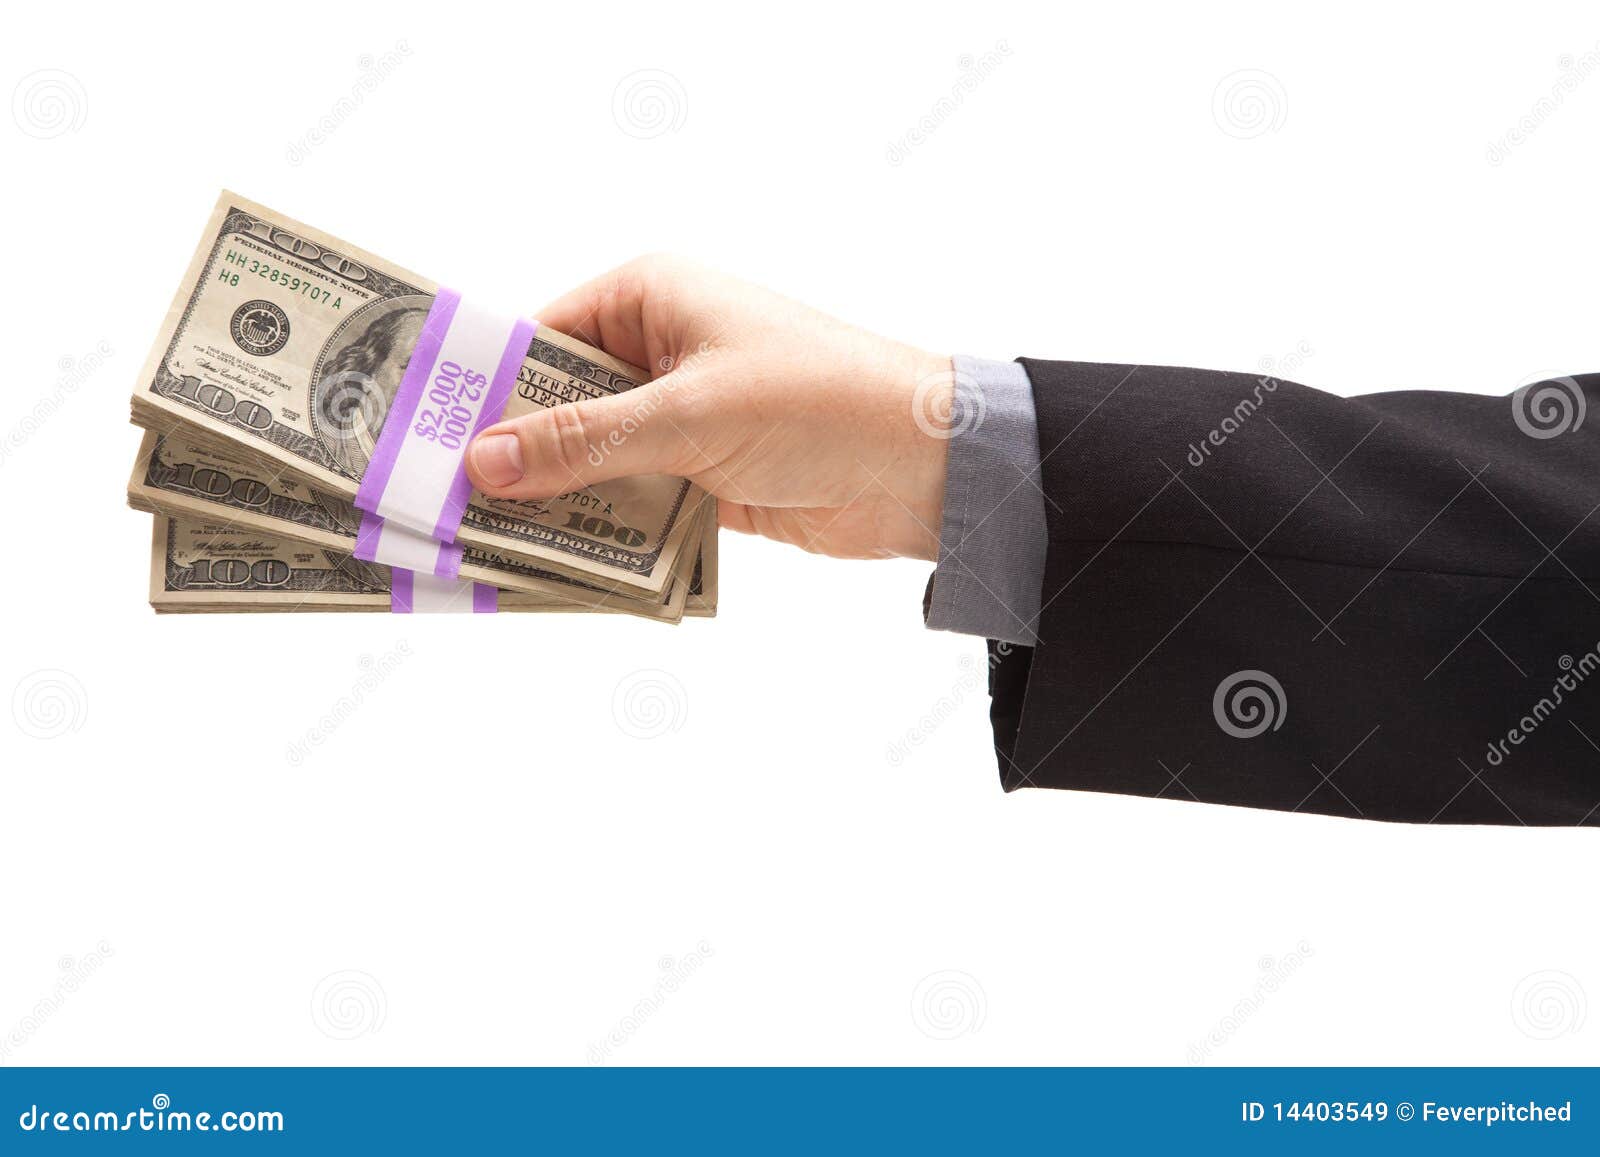 man handing over hundreds of dollars